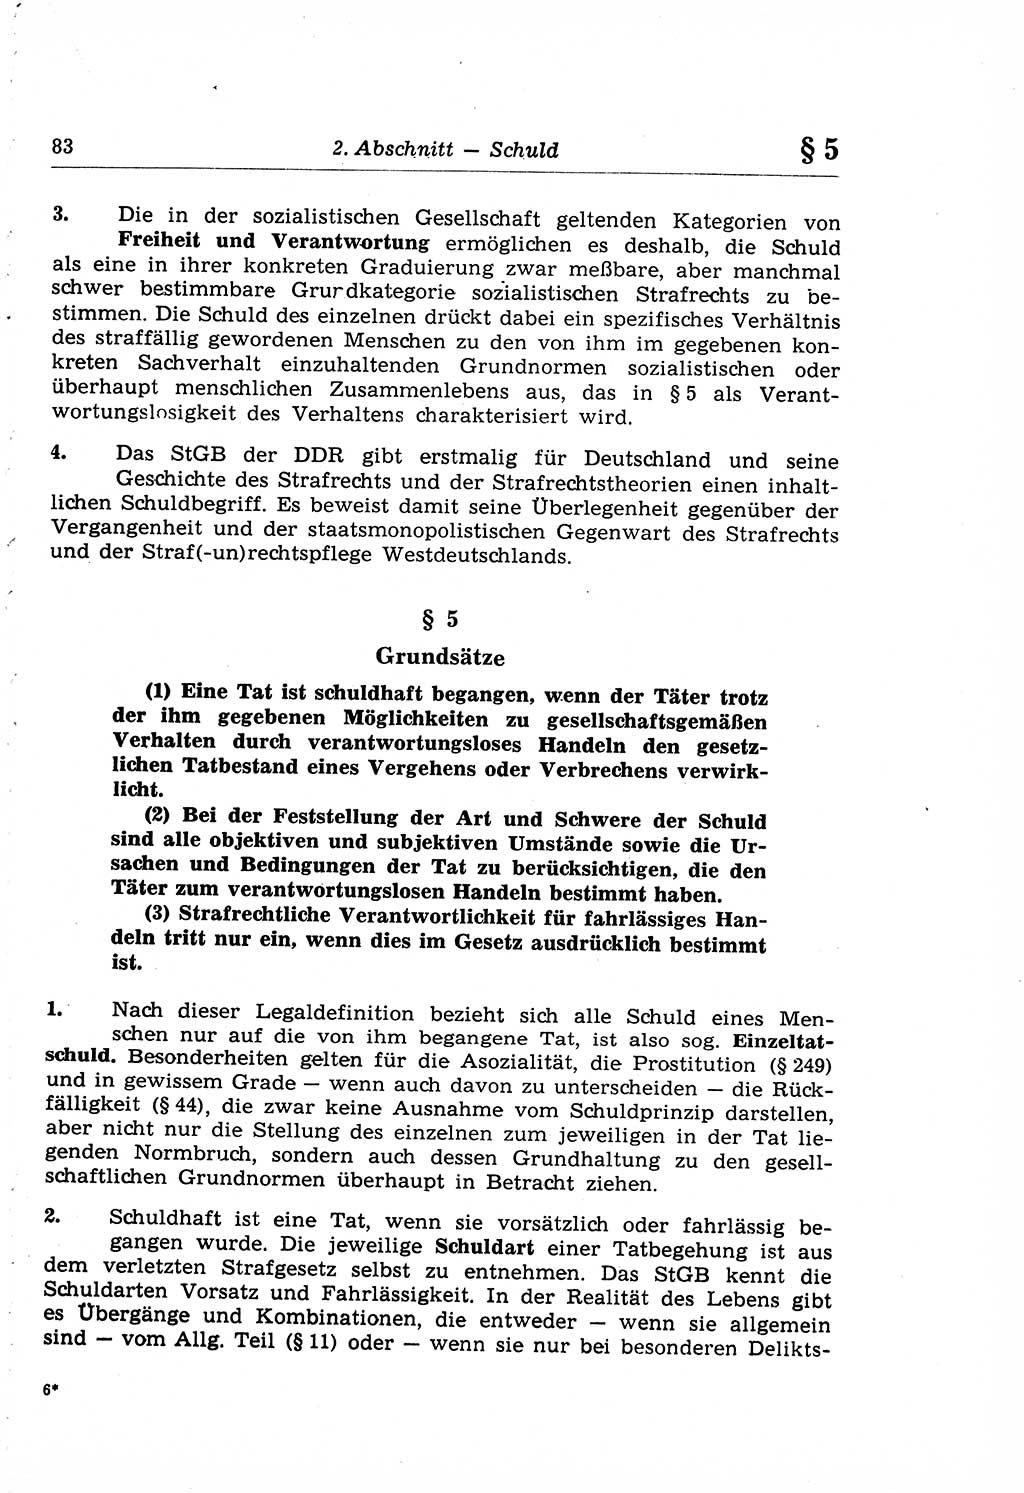 Strafrecht der Deutschen Demokratischen Republik (DDR), Lehrkommentar zum Strafgesetzbuch (StGB), Allgemeiner Teil 1969, Seite 83 (Strafr. DDR Lehrkomm. StGB AT 1969, S. 83)